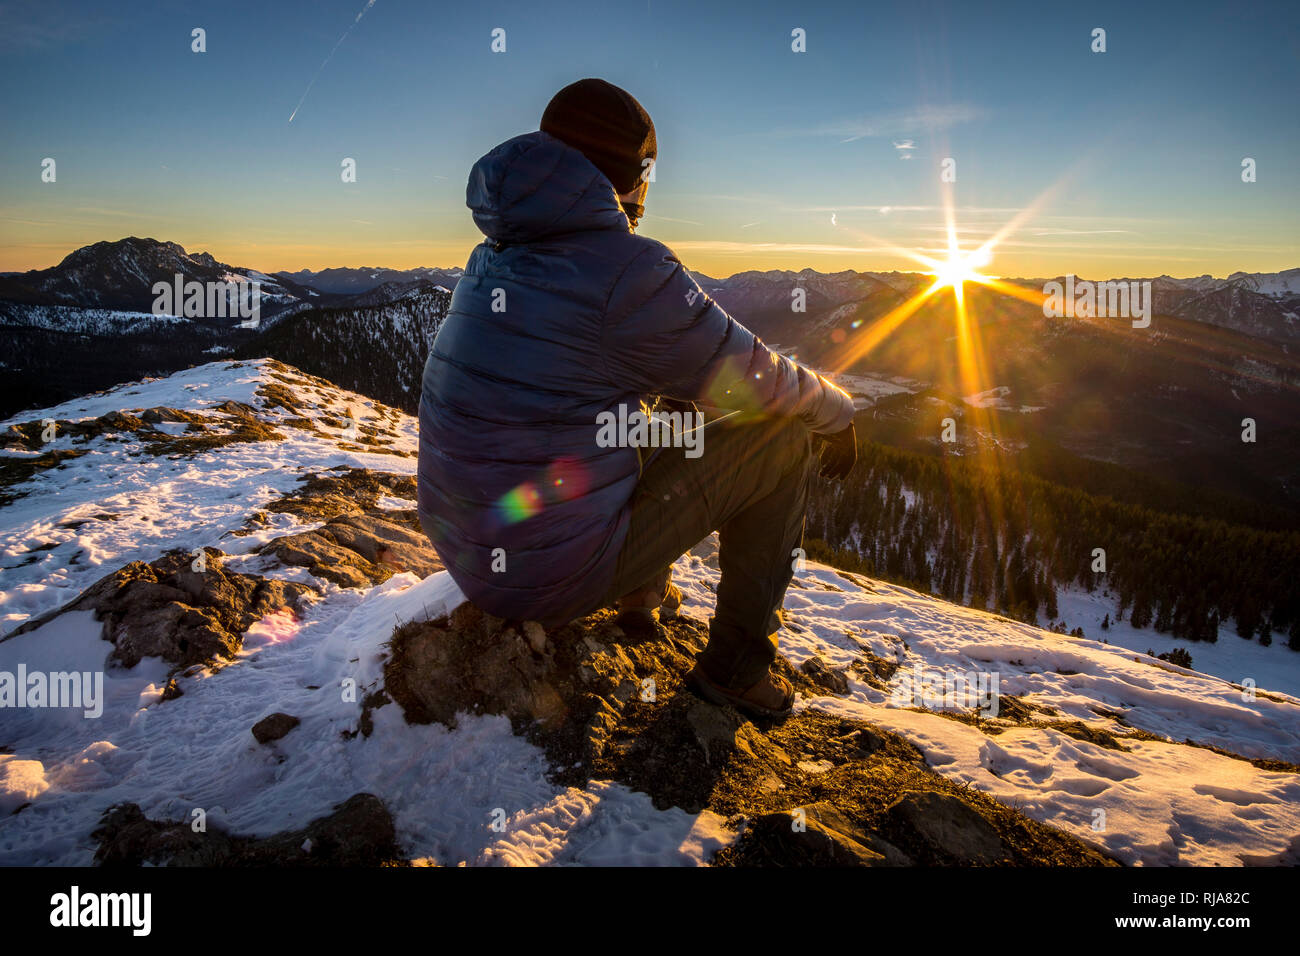 Deutschland, Bayern, Bayerische Alpen, Wanderer genießt Sonnenaufgang auf dem Jochberg Foto Stock